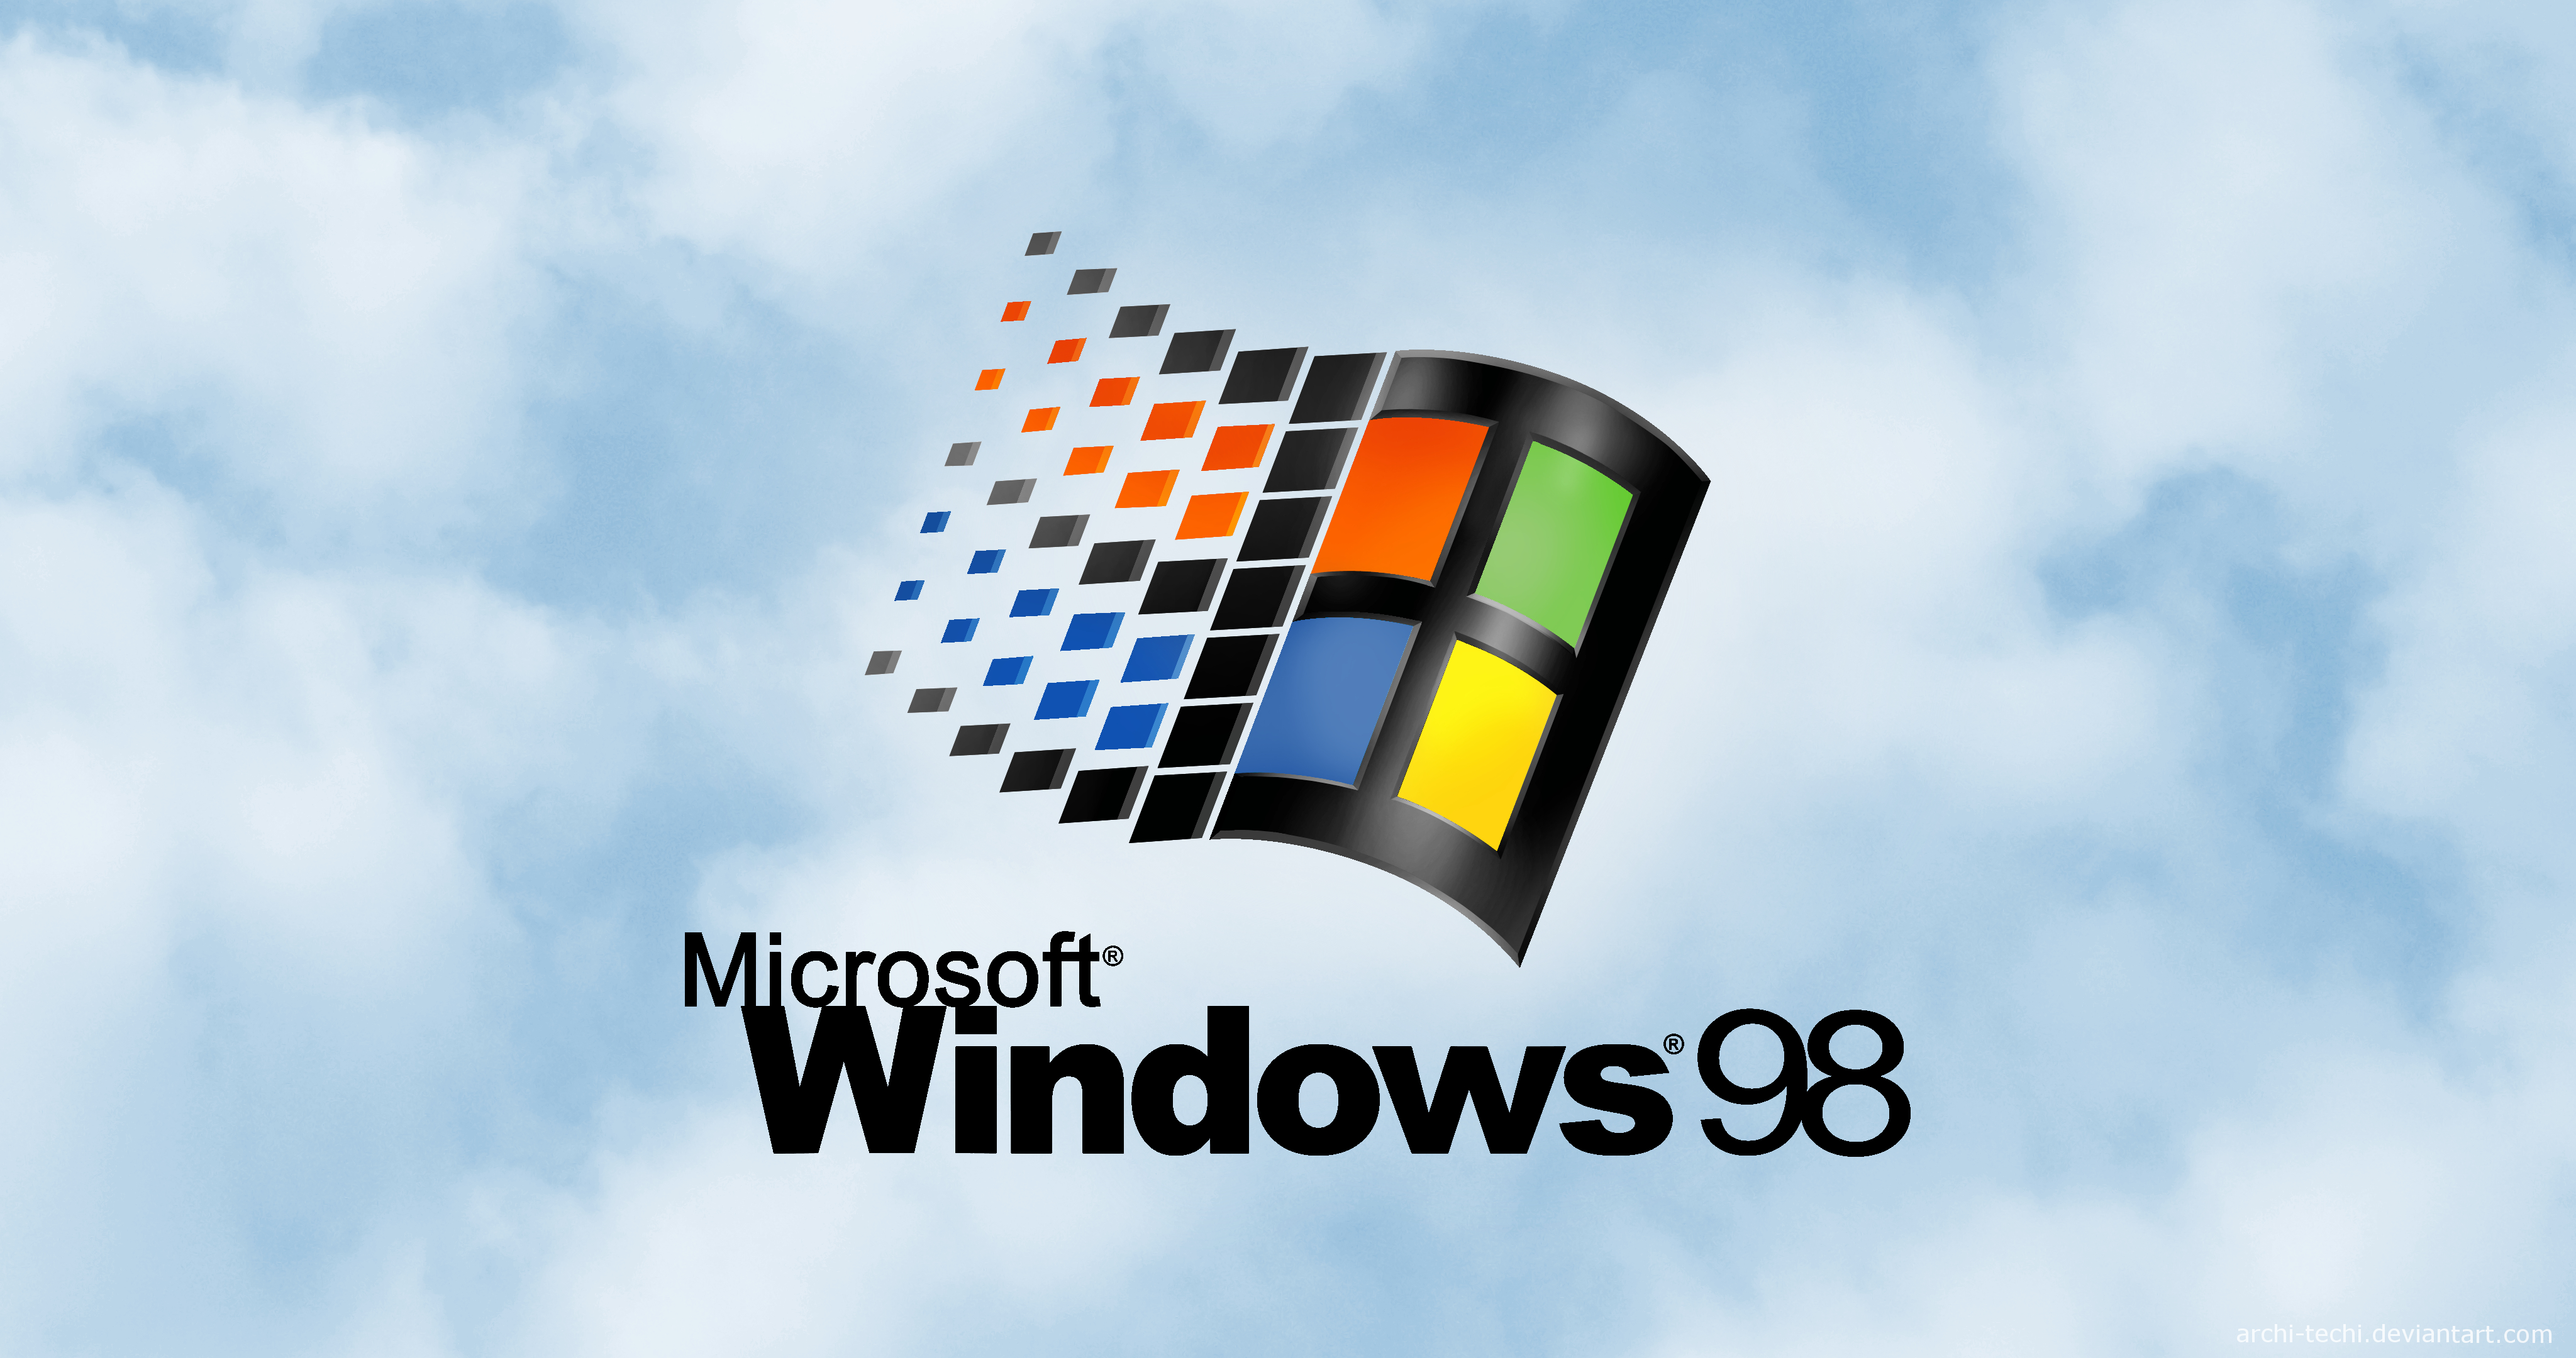 Sử dụng những hình nền Windows 98 1080P, 2K, 4K, 5K HD tuyệt đẹp với chất lượng hình ảnh tuyệt vời nhất! Tải xuống miễn phí và trang trí nền desktop của bạn với những hình ảnh độc đáo và cổ điển. Tạo ra một không gian làm việc độc đáo và sáng tạo với những hình nền này.